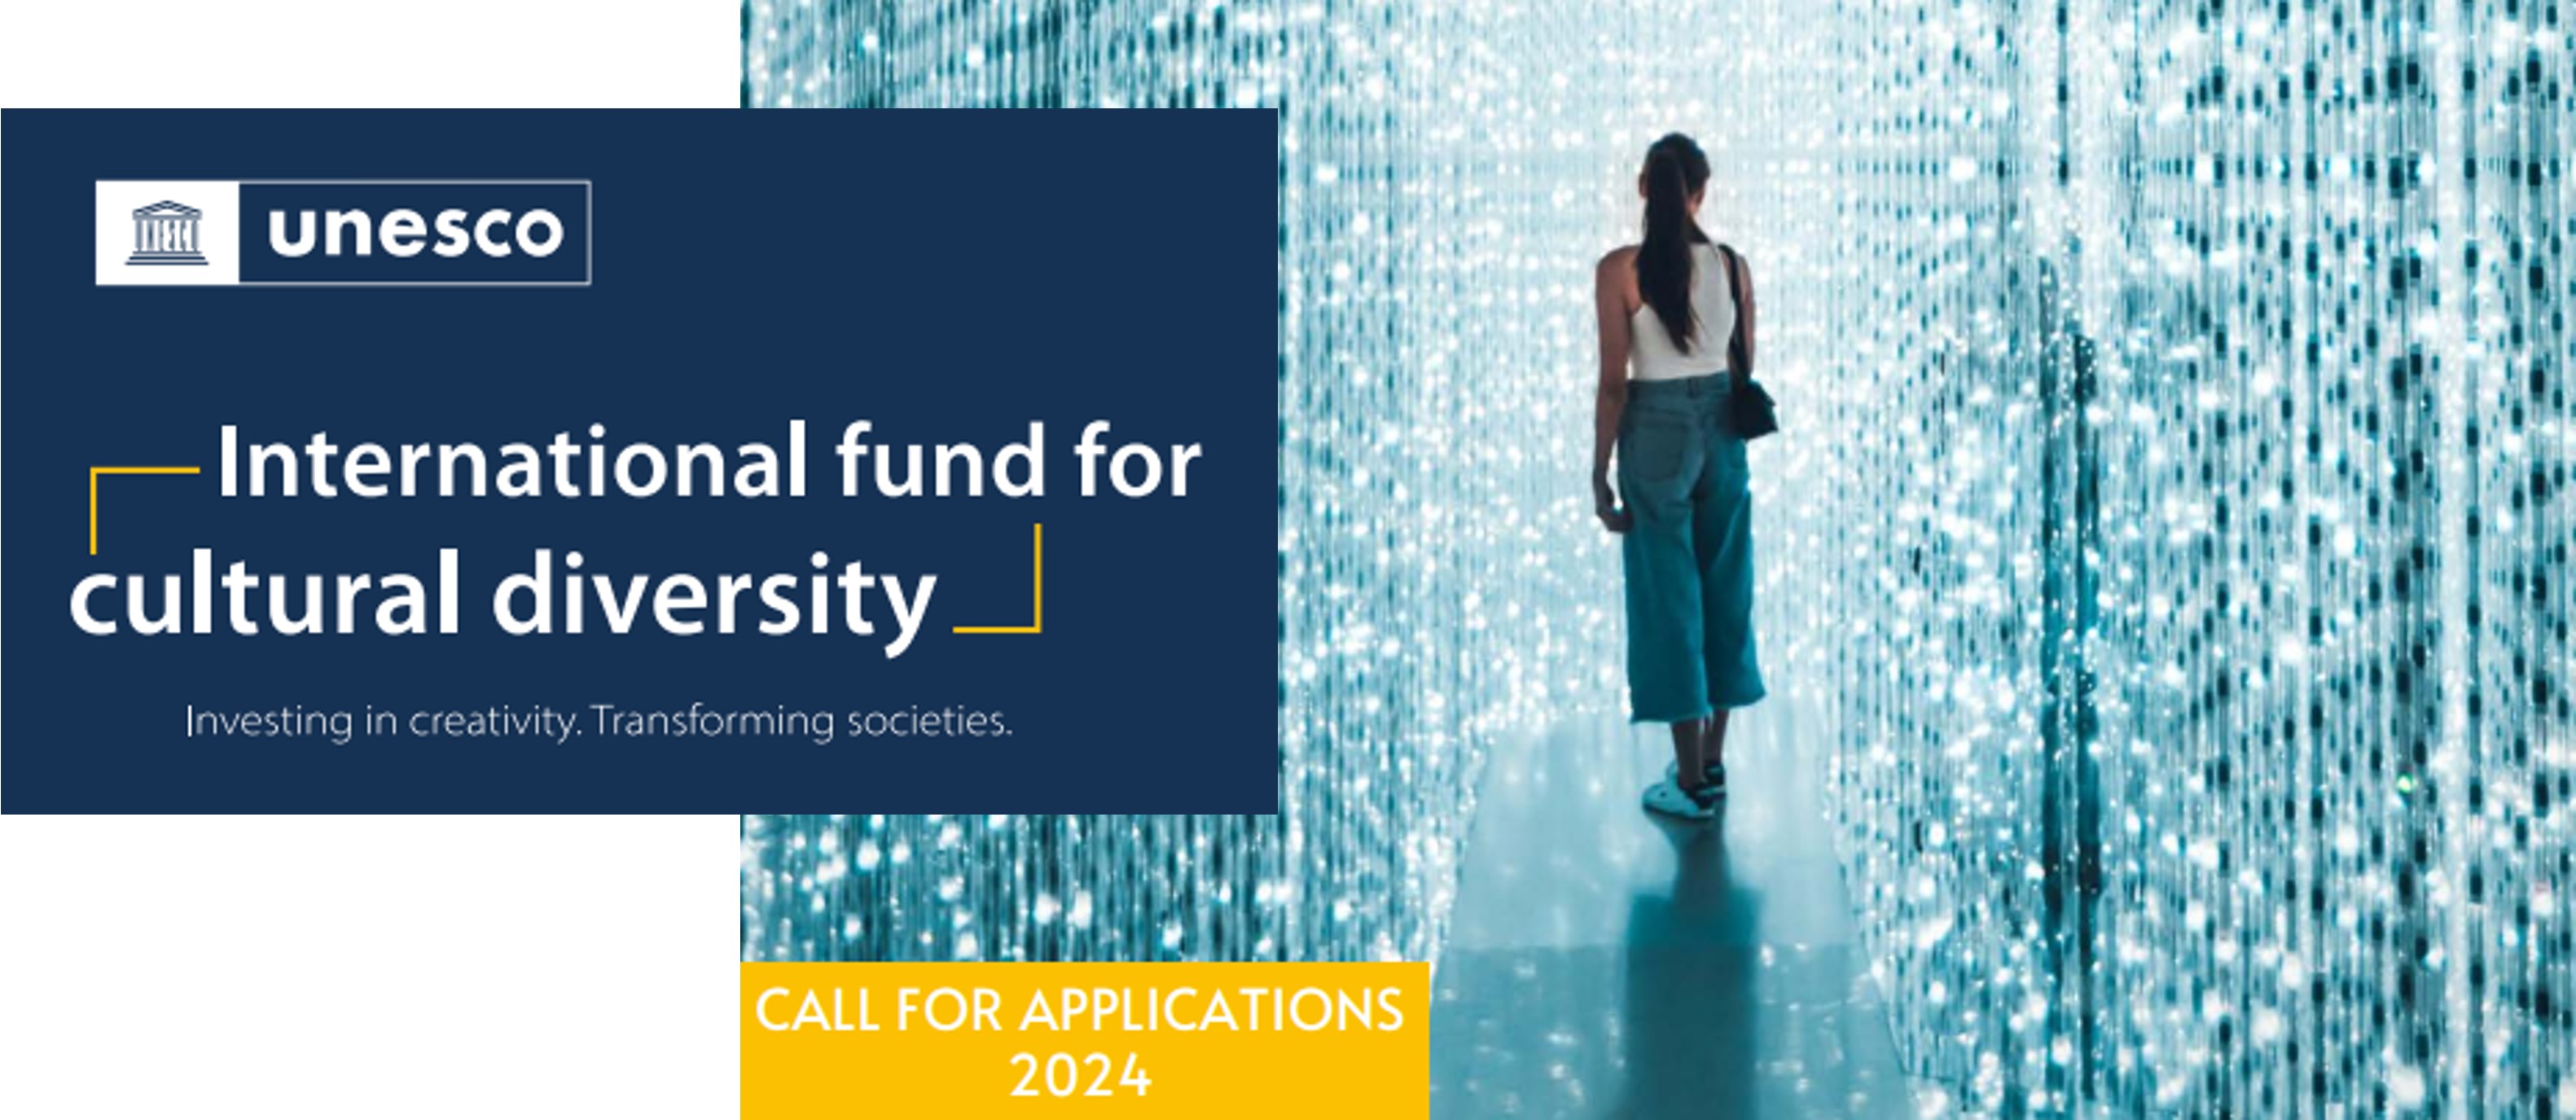 El Fondo Internacional para la Diversidad Cultural (FIDC) lanza su 15ª convocatoria